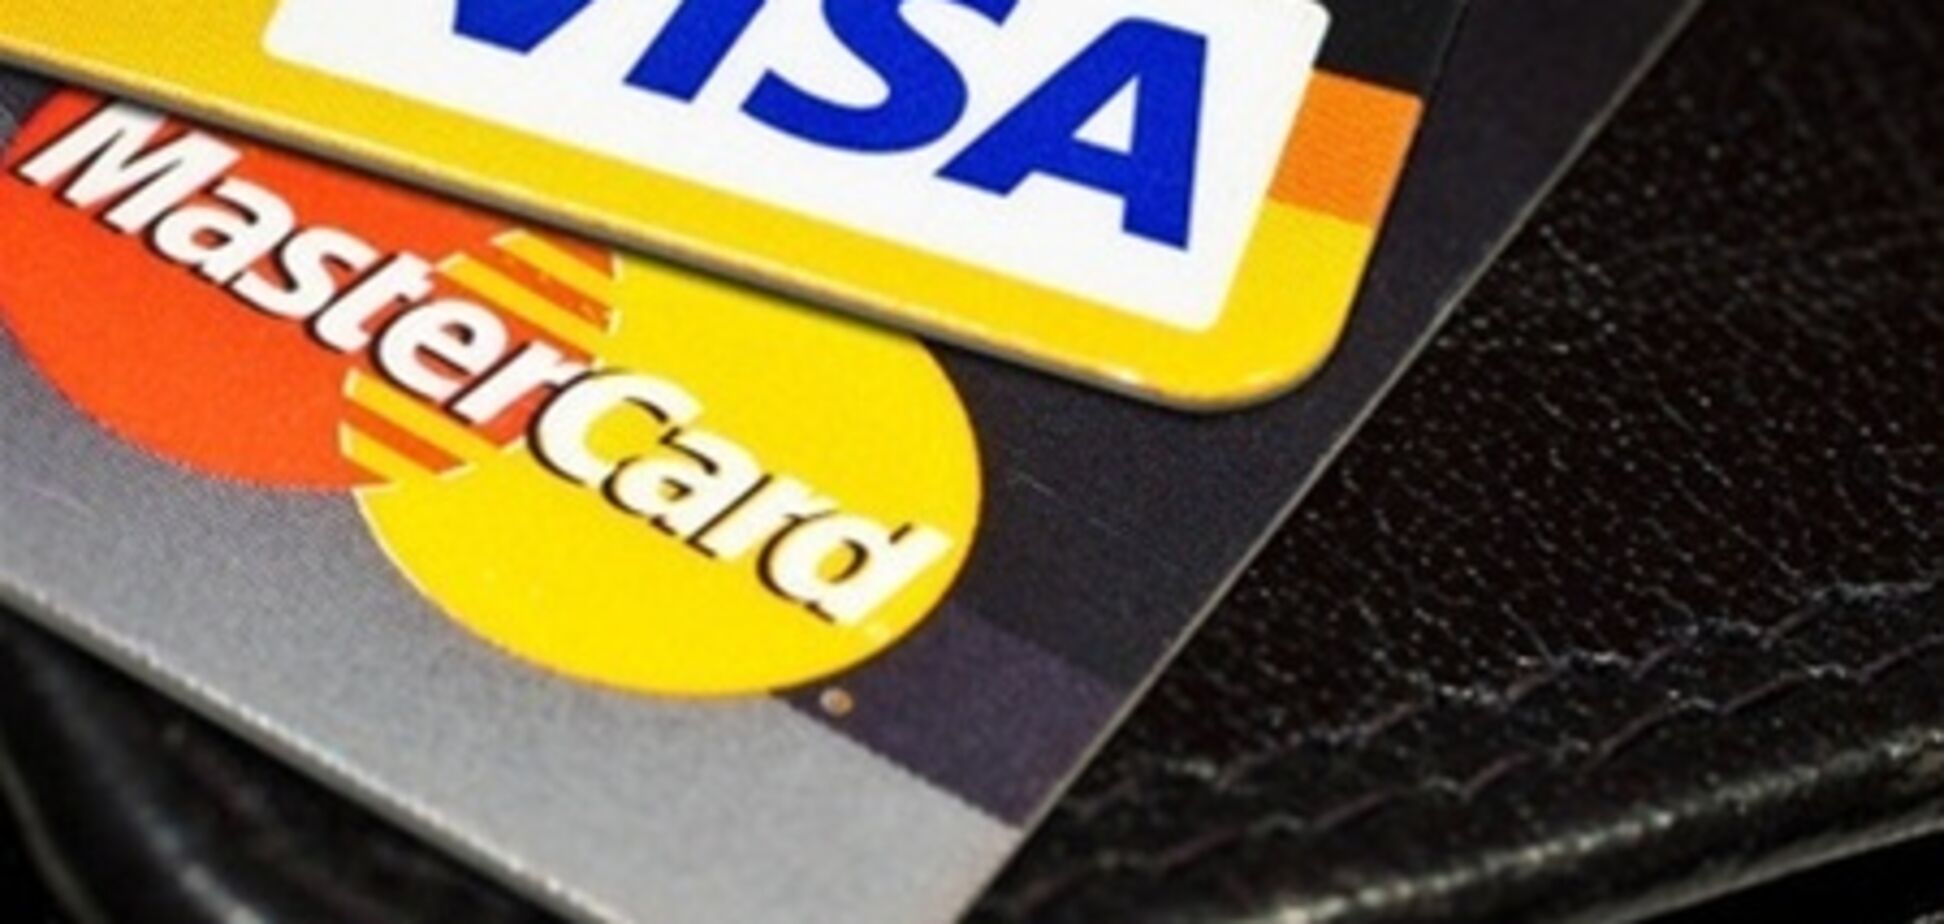 Visa и MasterCard оказались в эпицентре скандала